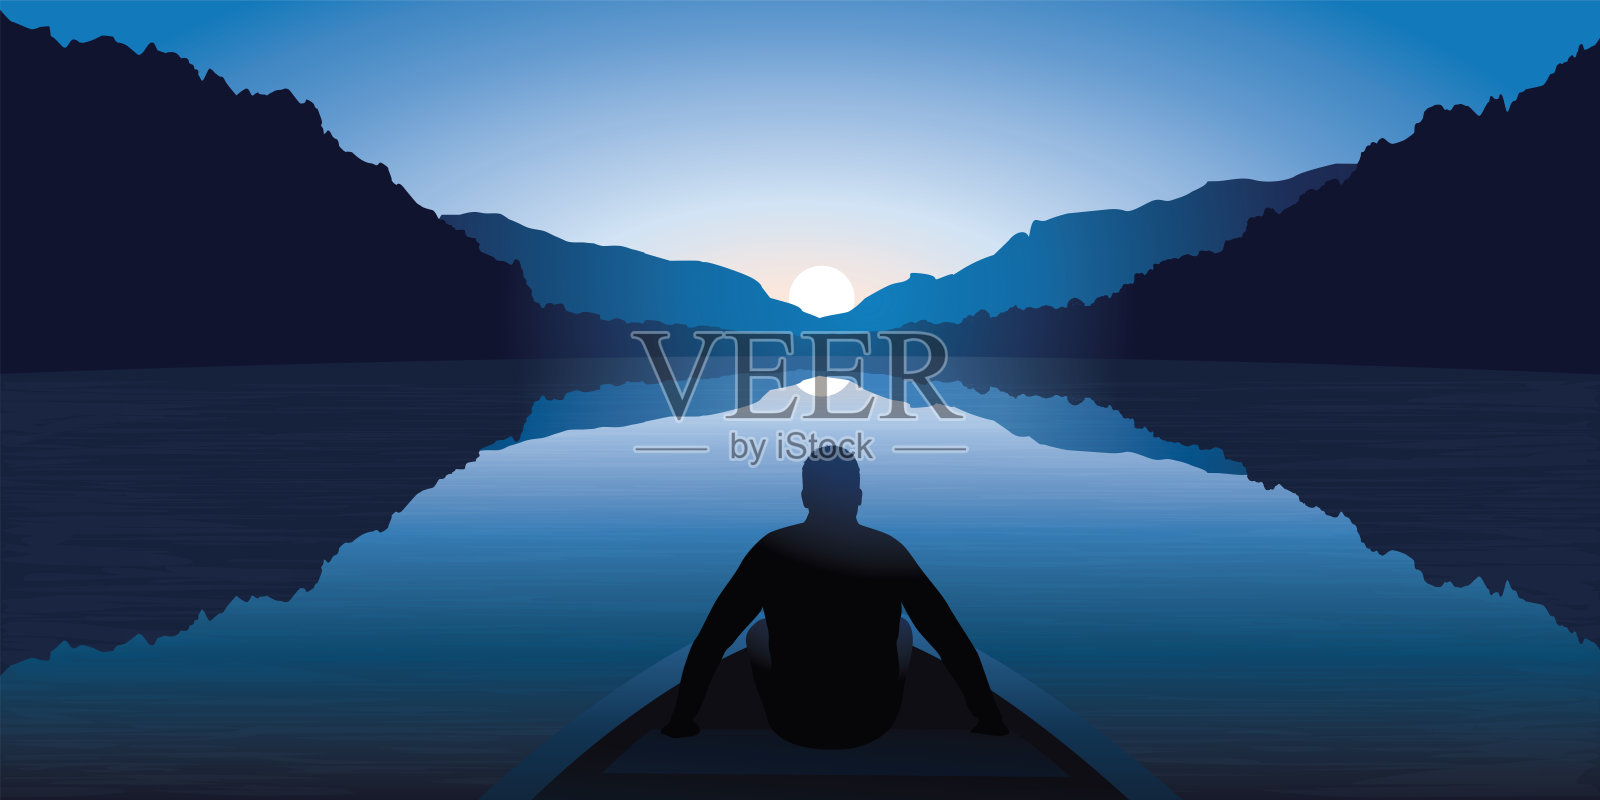 一个男人在船上，凝视着湖面上的日出，在一片壮丽的山景之中。插画图片素材